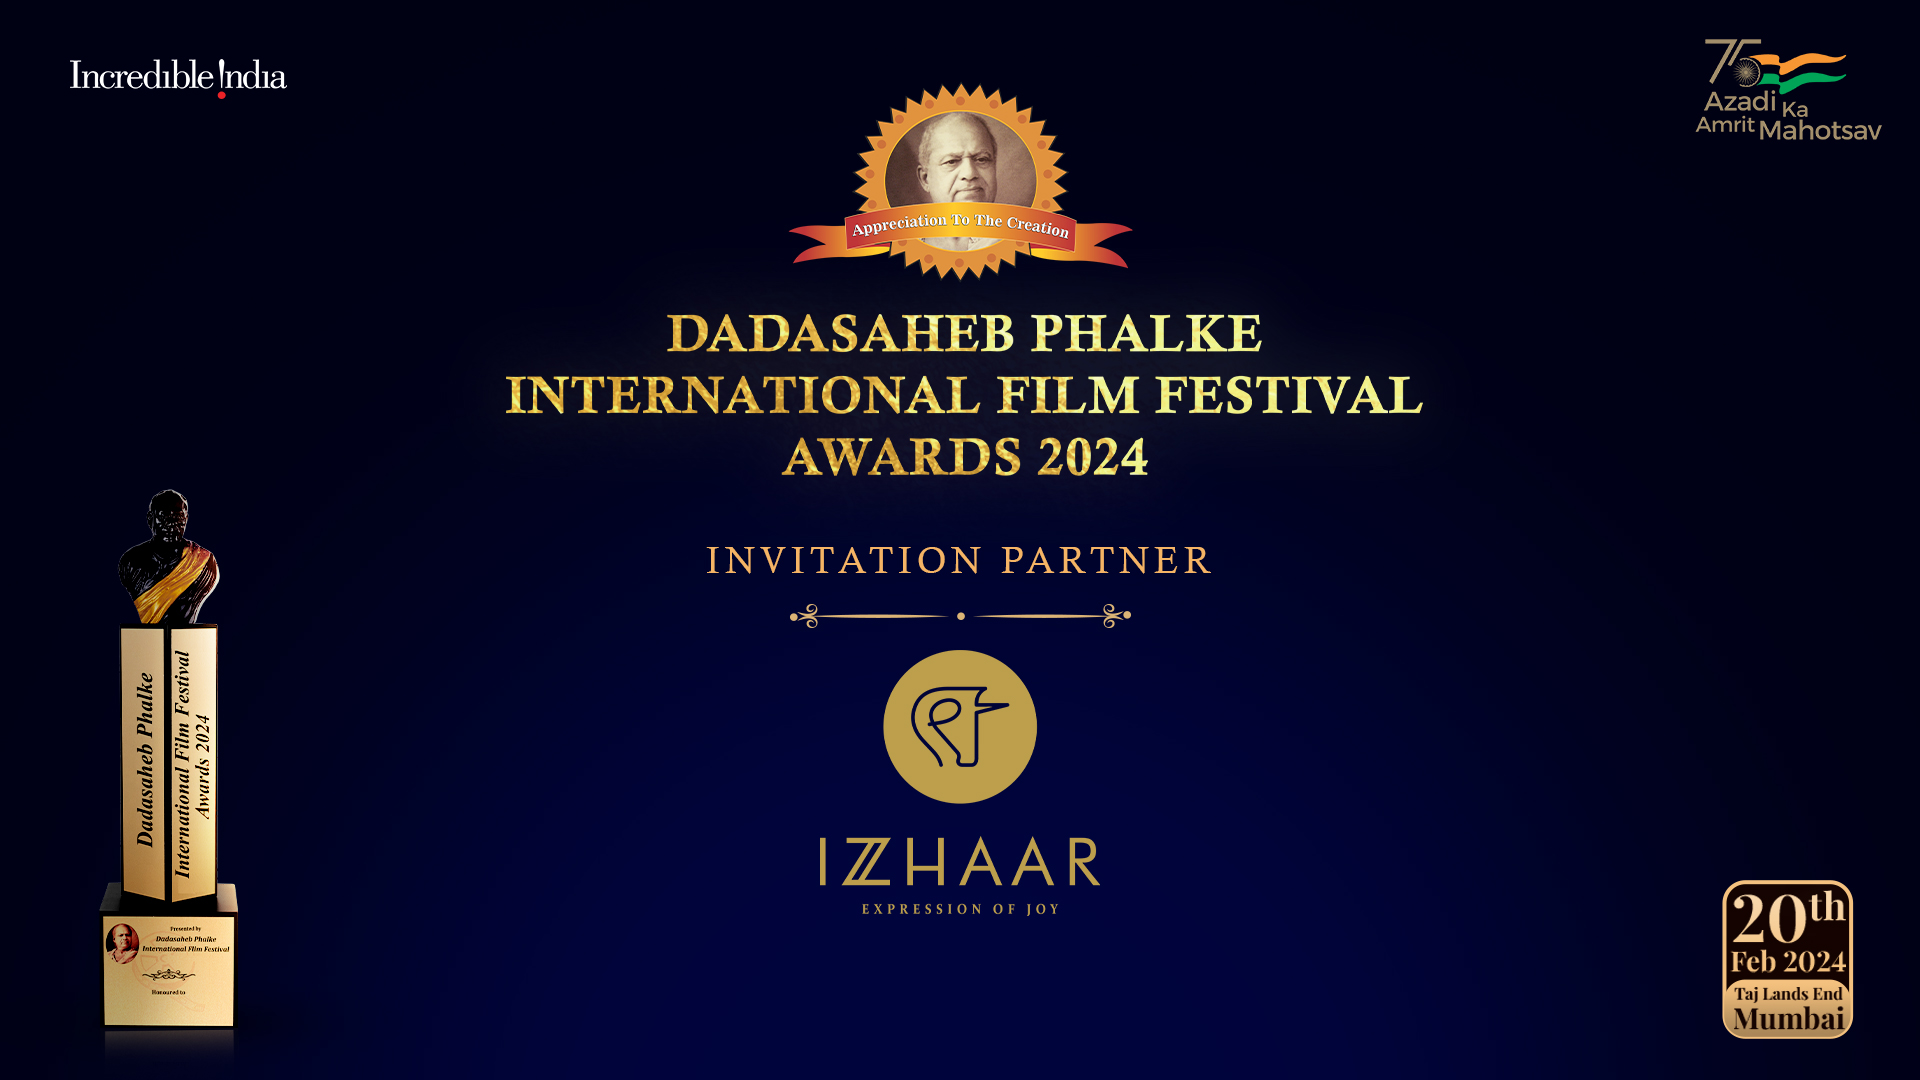 IZZHAAR TO BE THE OFFICIAL ‘INVITATION PARTNER’ FOR DADASAHEB PHALKE INTERNATIONAL FILM FESTIVAL AWARDS 2024